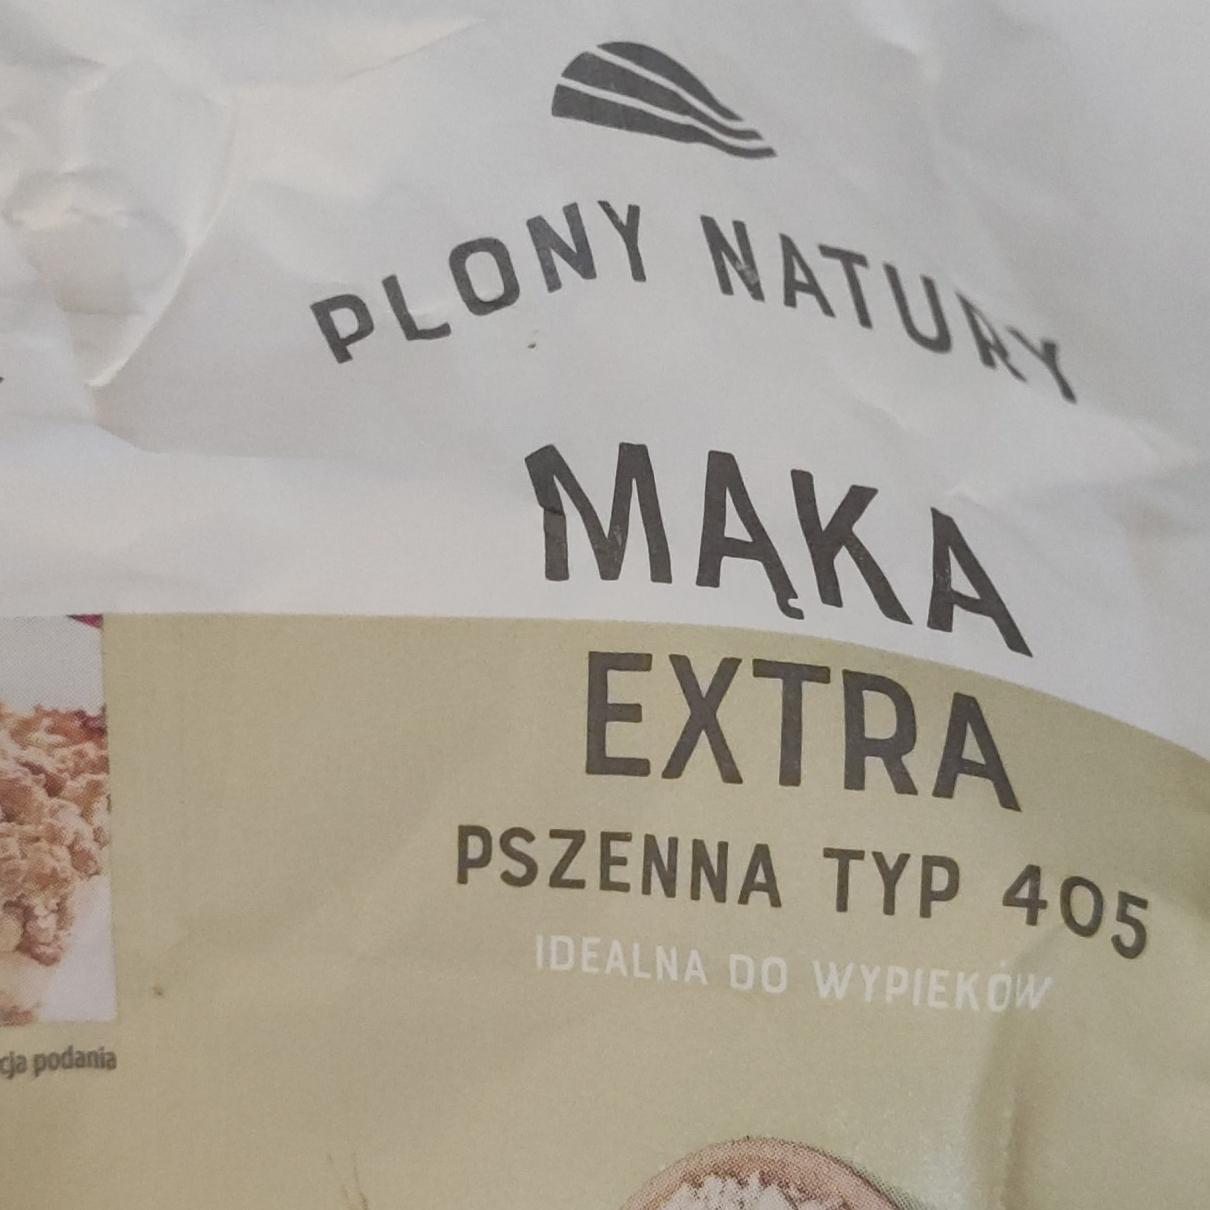 Фото - Борошно пшеничне Maka Extra Plony Natury